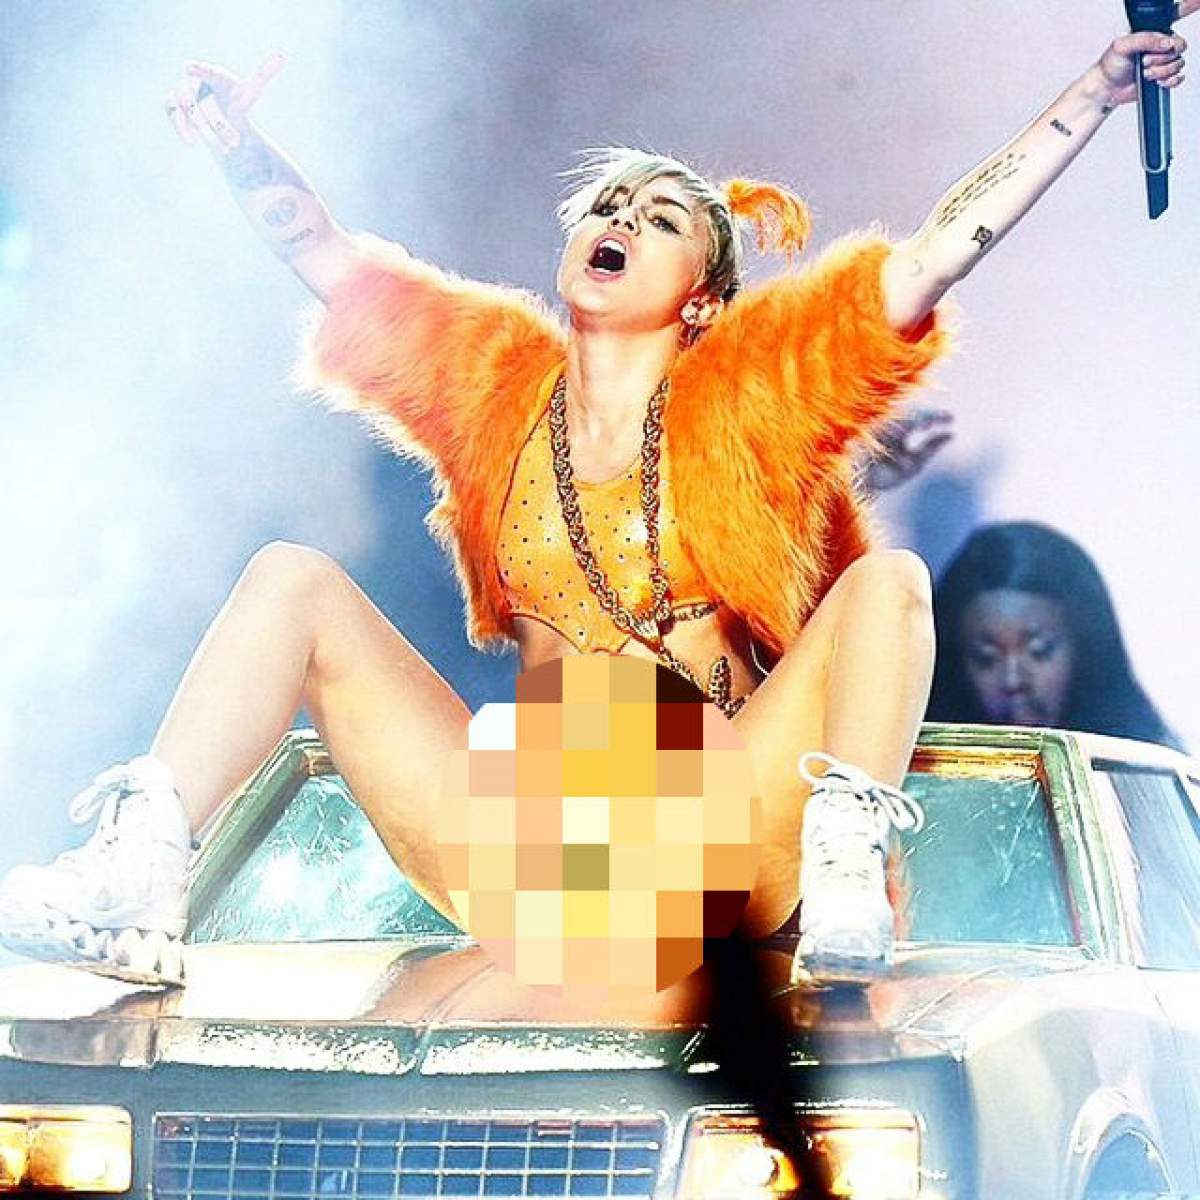 Miley Cyrus a făcut-o şi pe asta! Şi-a depărtat picioarele pe scenă şi a arătat tot